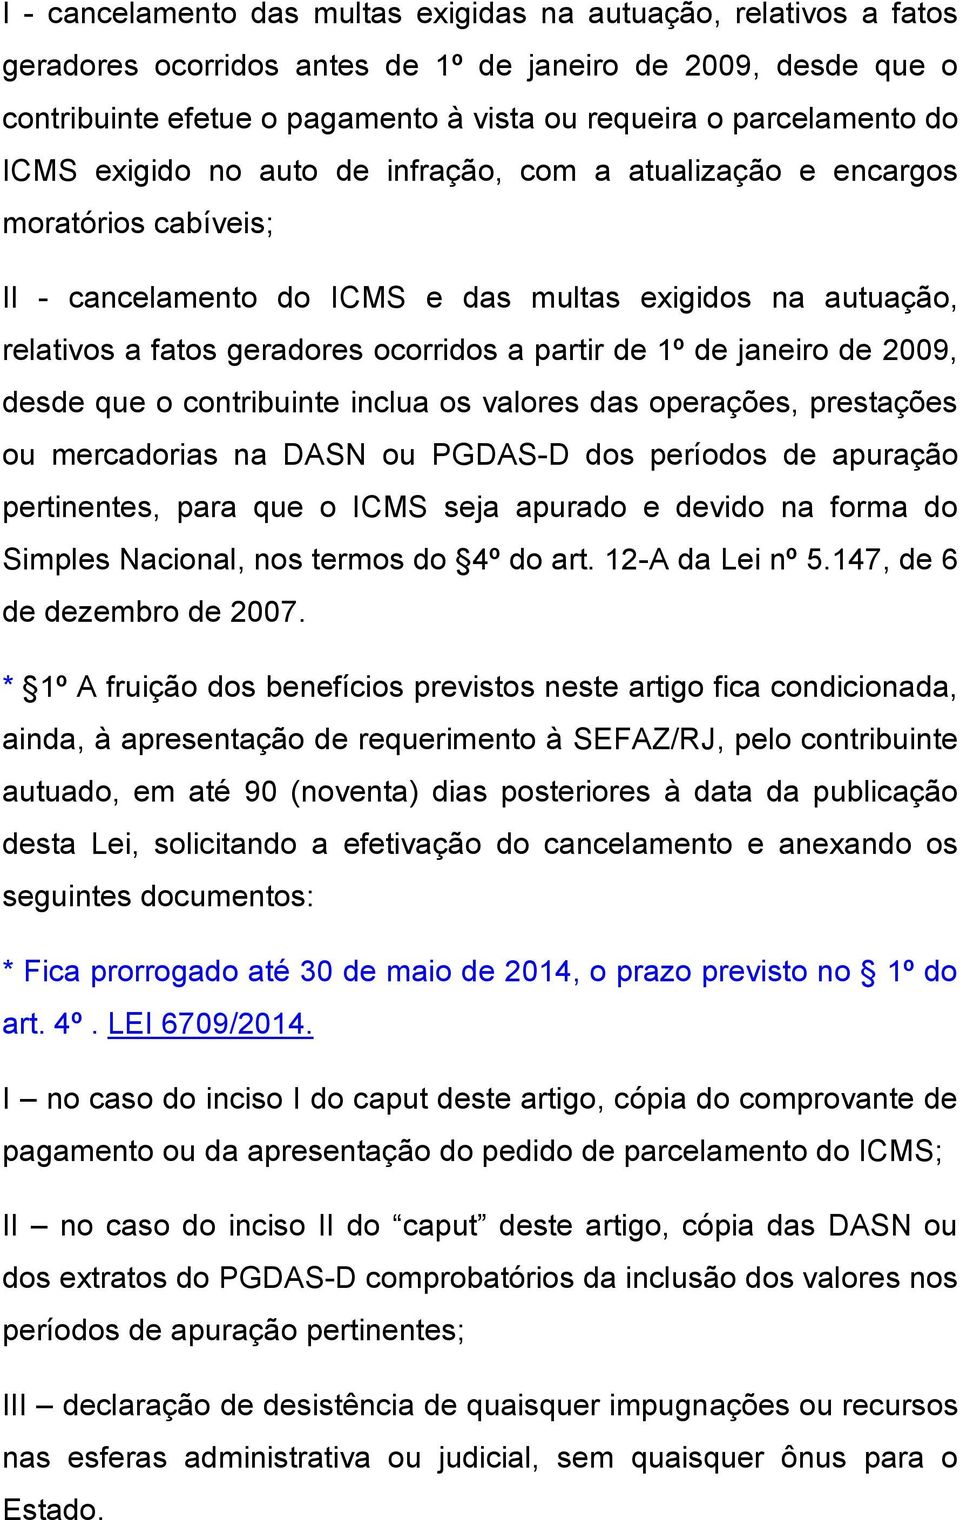 1º de janeiro de 2009, desde que o contribuinte inclua os valores das operações, prestações ou mercadorias na DASN ou PGDAS-D dos períodos de apuração pertinentes, para que o ICMS seja apurado e